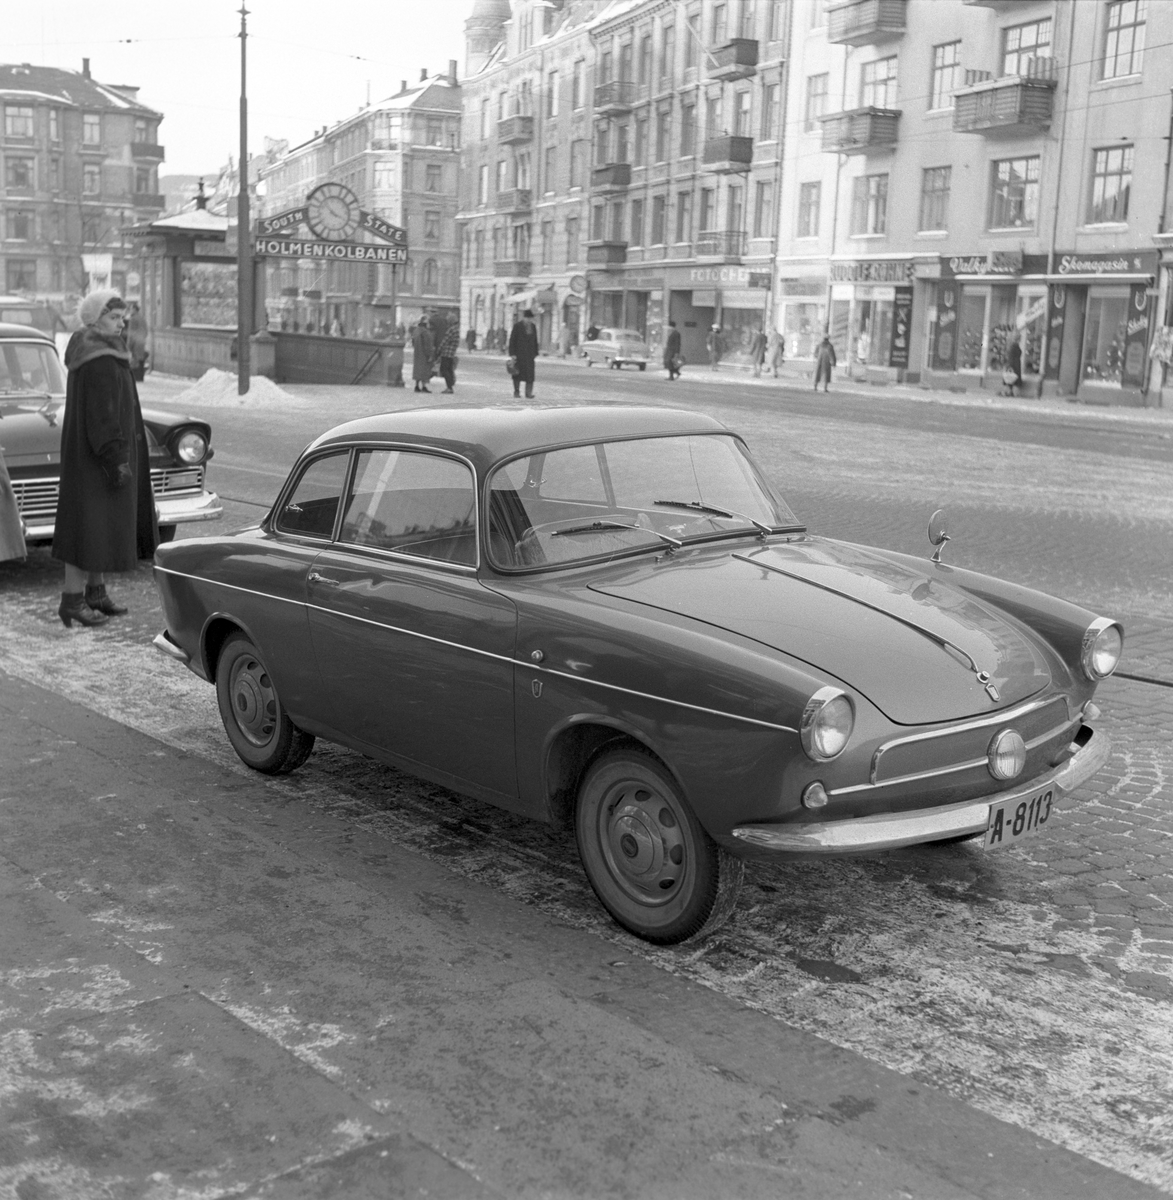 Bilen er en Fiat 600 Berlinetta Allemano, en spesialutgave med karrosseri fra Carrozzeria Allemano. Ble bygget mellom 1955 og 1958 i et meget begrenset antall. Bilen Fiat Special parkert i Bogstadveien ved Valkyrie plass i Oslo. I bakgrunnen ses nedgangen til stasjonen på Holmenkolbanen.